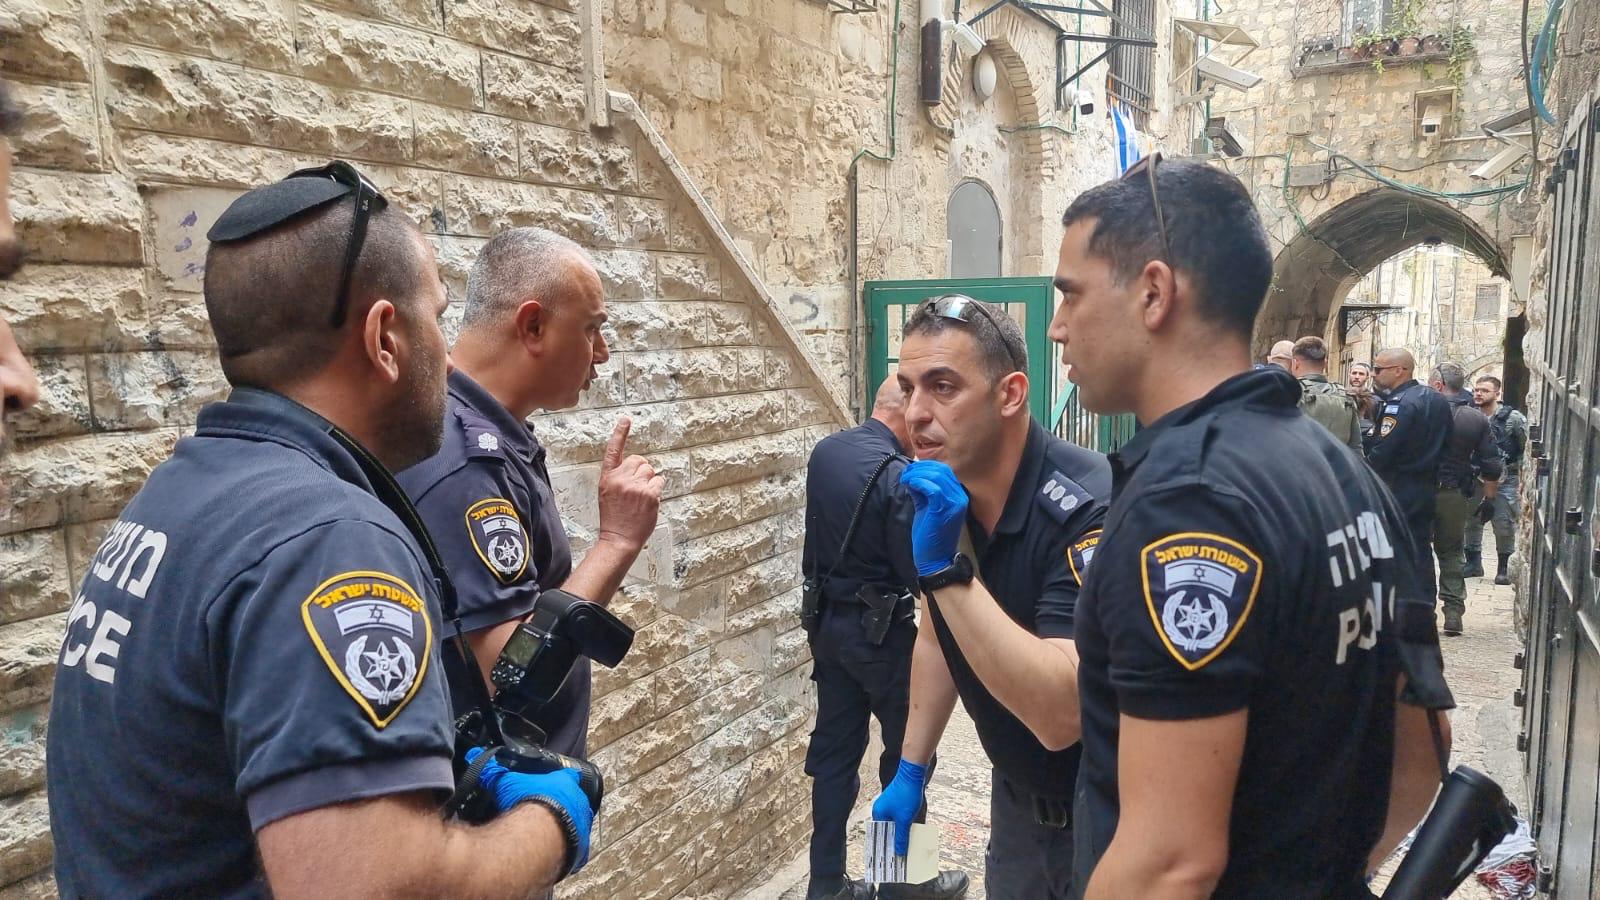 إصابة شرطي بجروح متوسط في اعتداء طعن إرهابي في البلدة القديمة من أورشليم القدس